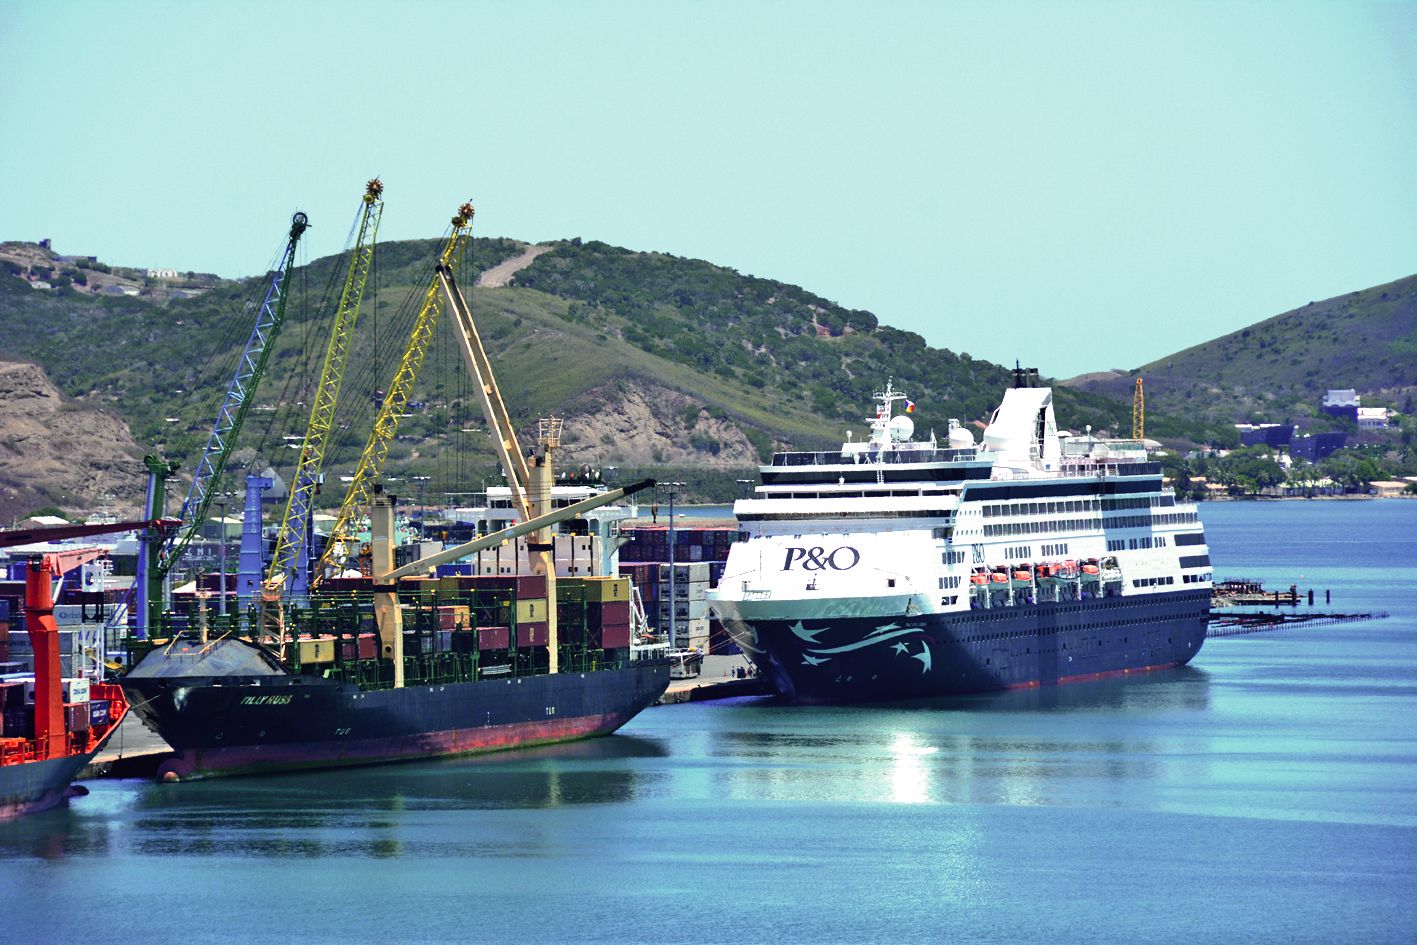 Le port doit s’adapter au gigantisme des grands navires pour rester un lieu d’accueil. Photo Thierry PERRON